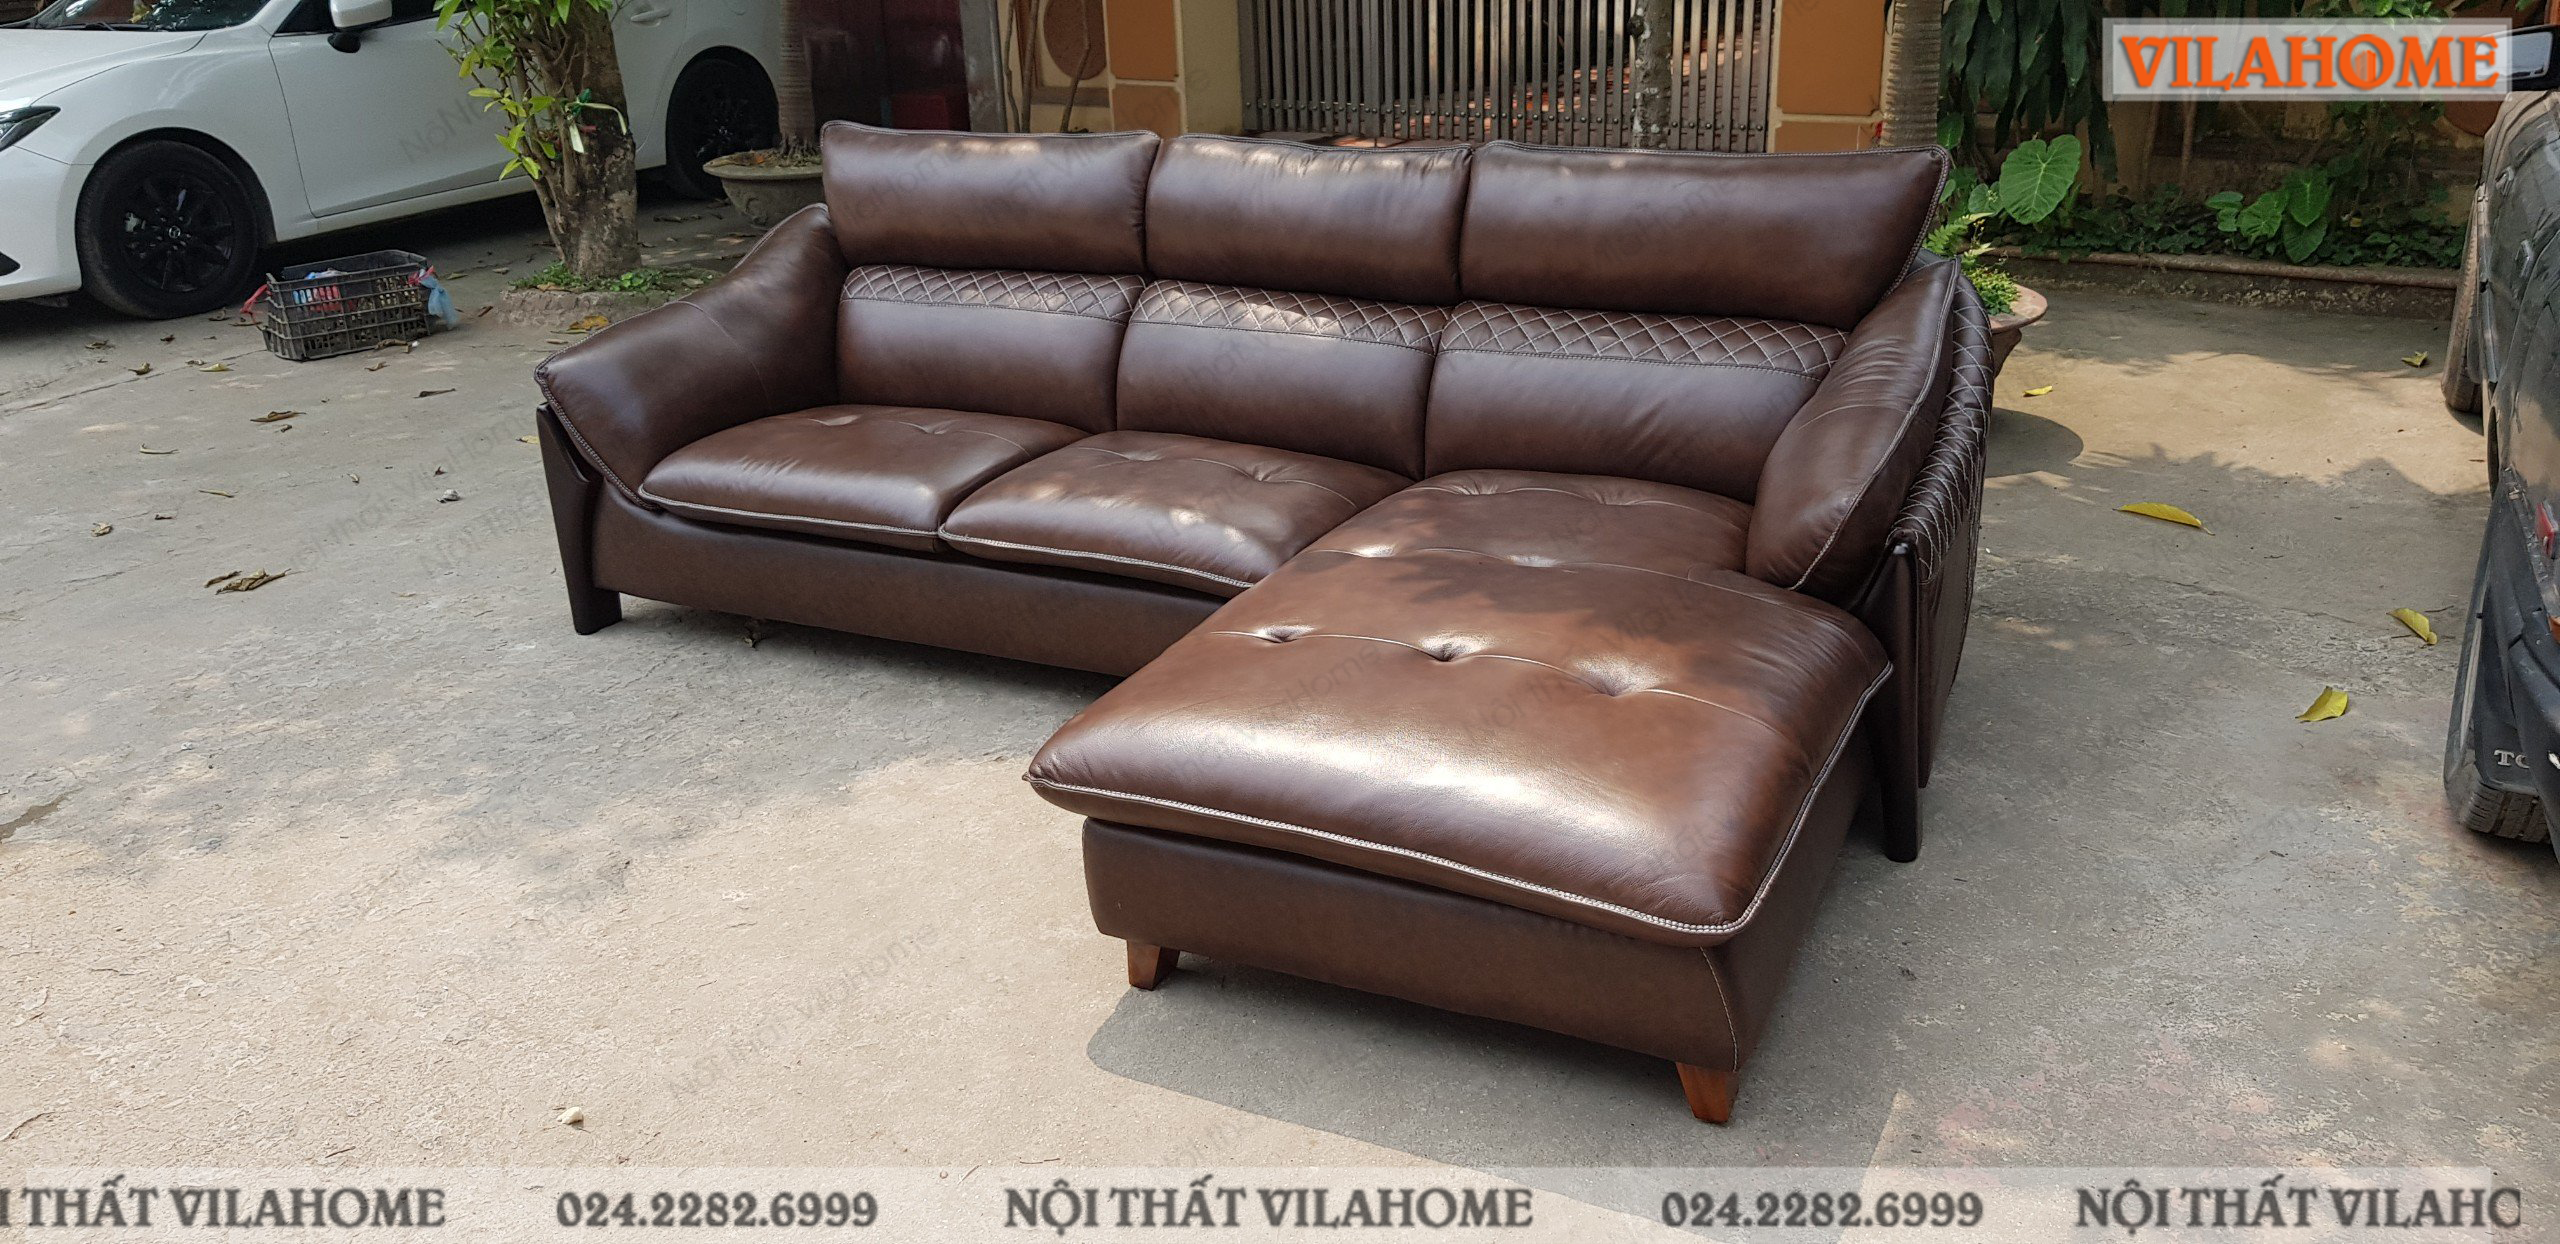 Sofa góc da màu nâu chuẩn bị đi bàn giao cho khách hàng cũng ở TP Bắc Ninh.